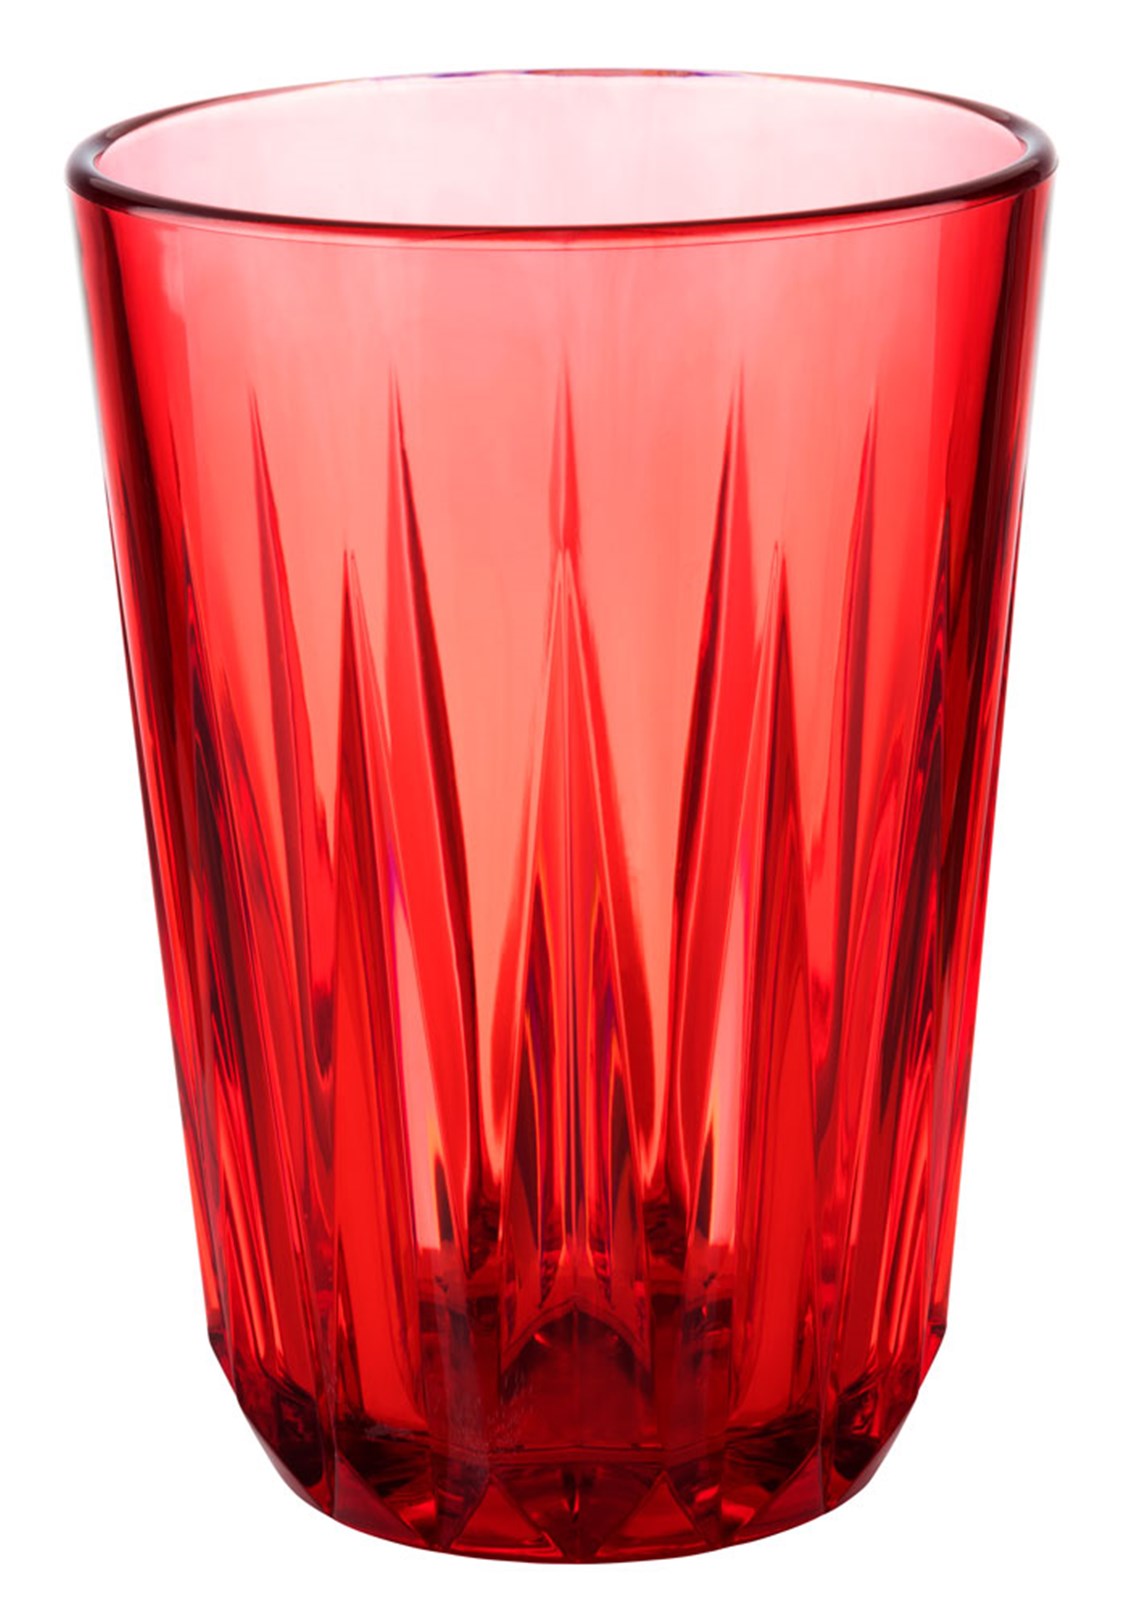 Trinkbecher Crystal transparent 150ml in Rot präsentiert im Onlineshop von KAQTU Design AG. Glas ist von Buffet&Display